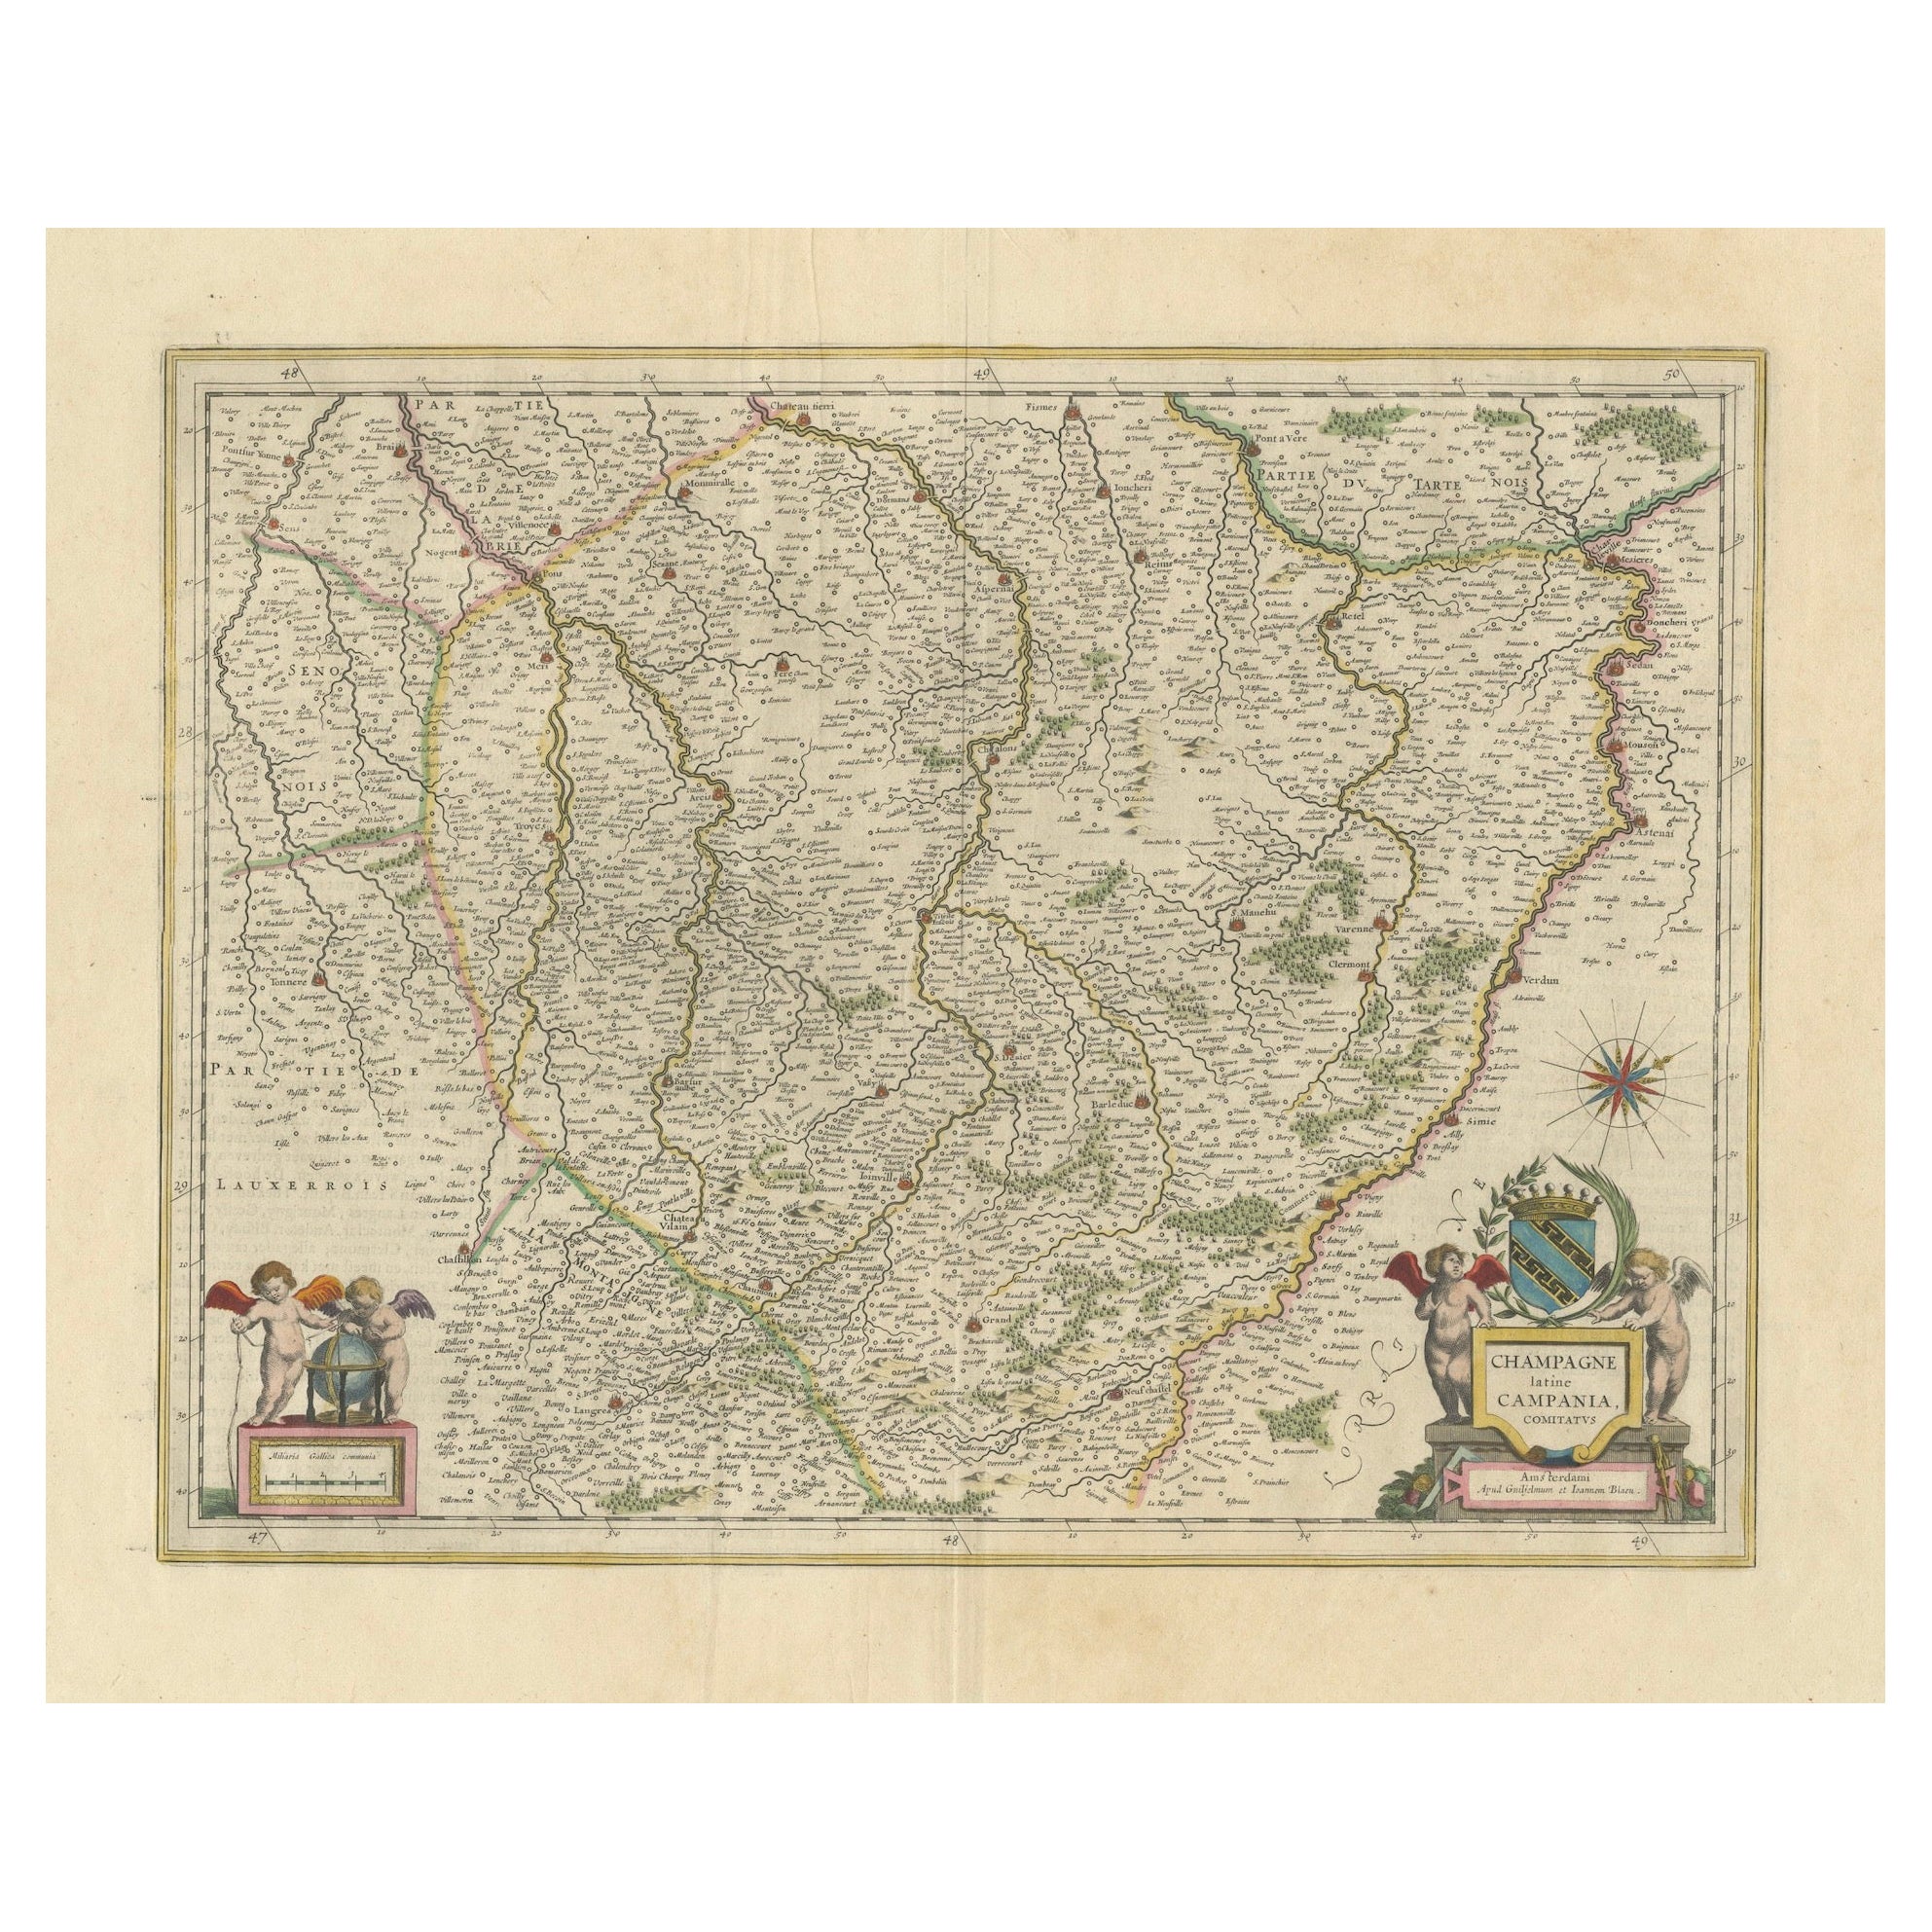 Authentique carte Janssonius de 1644 de la région champagne (Campane) en France